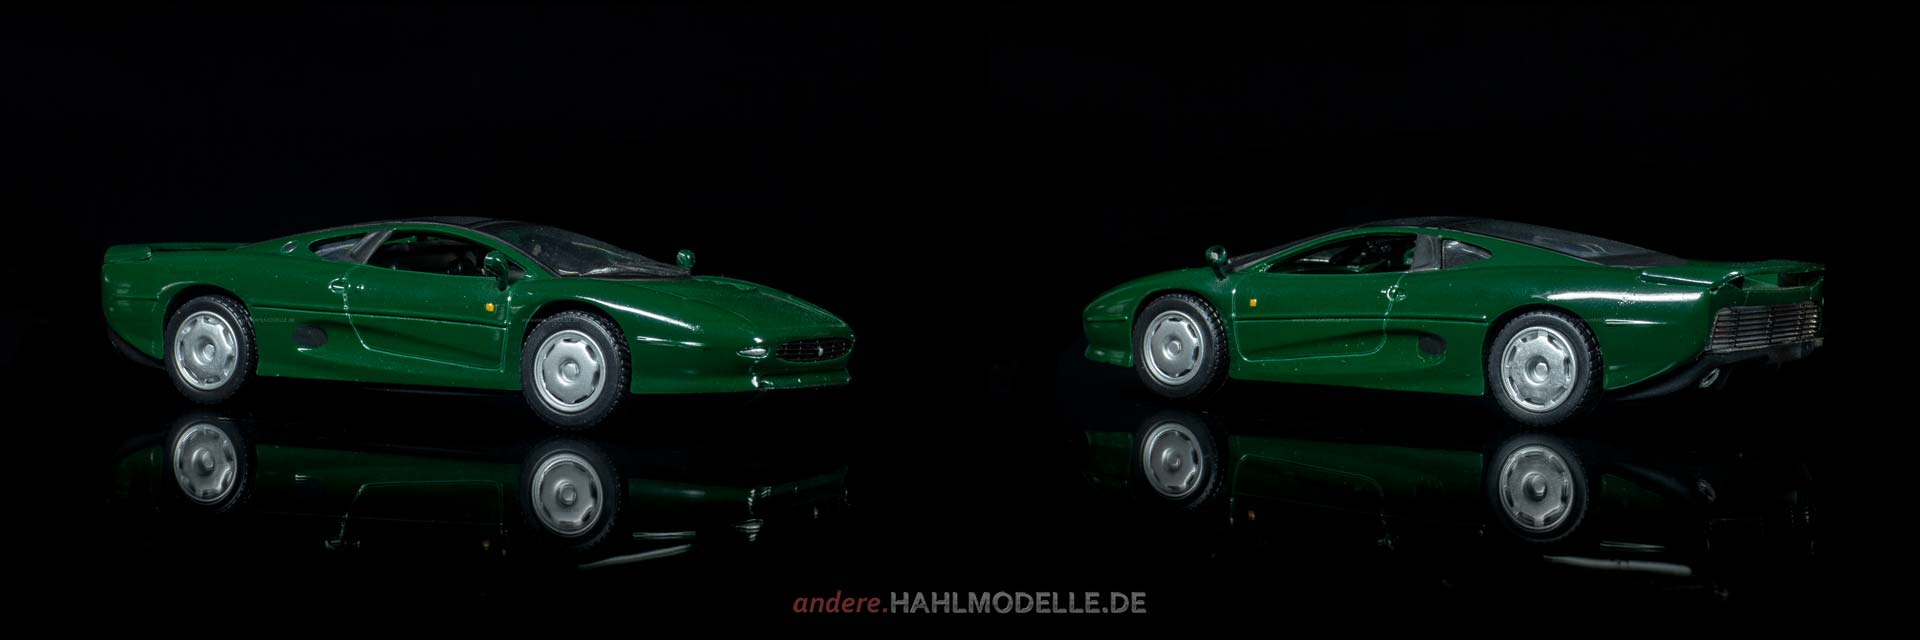 Jaguar XJ220 | Coupé | Bburago | www.andere.hahlmodelle.de